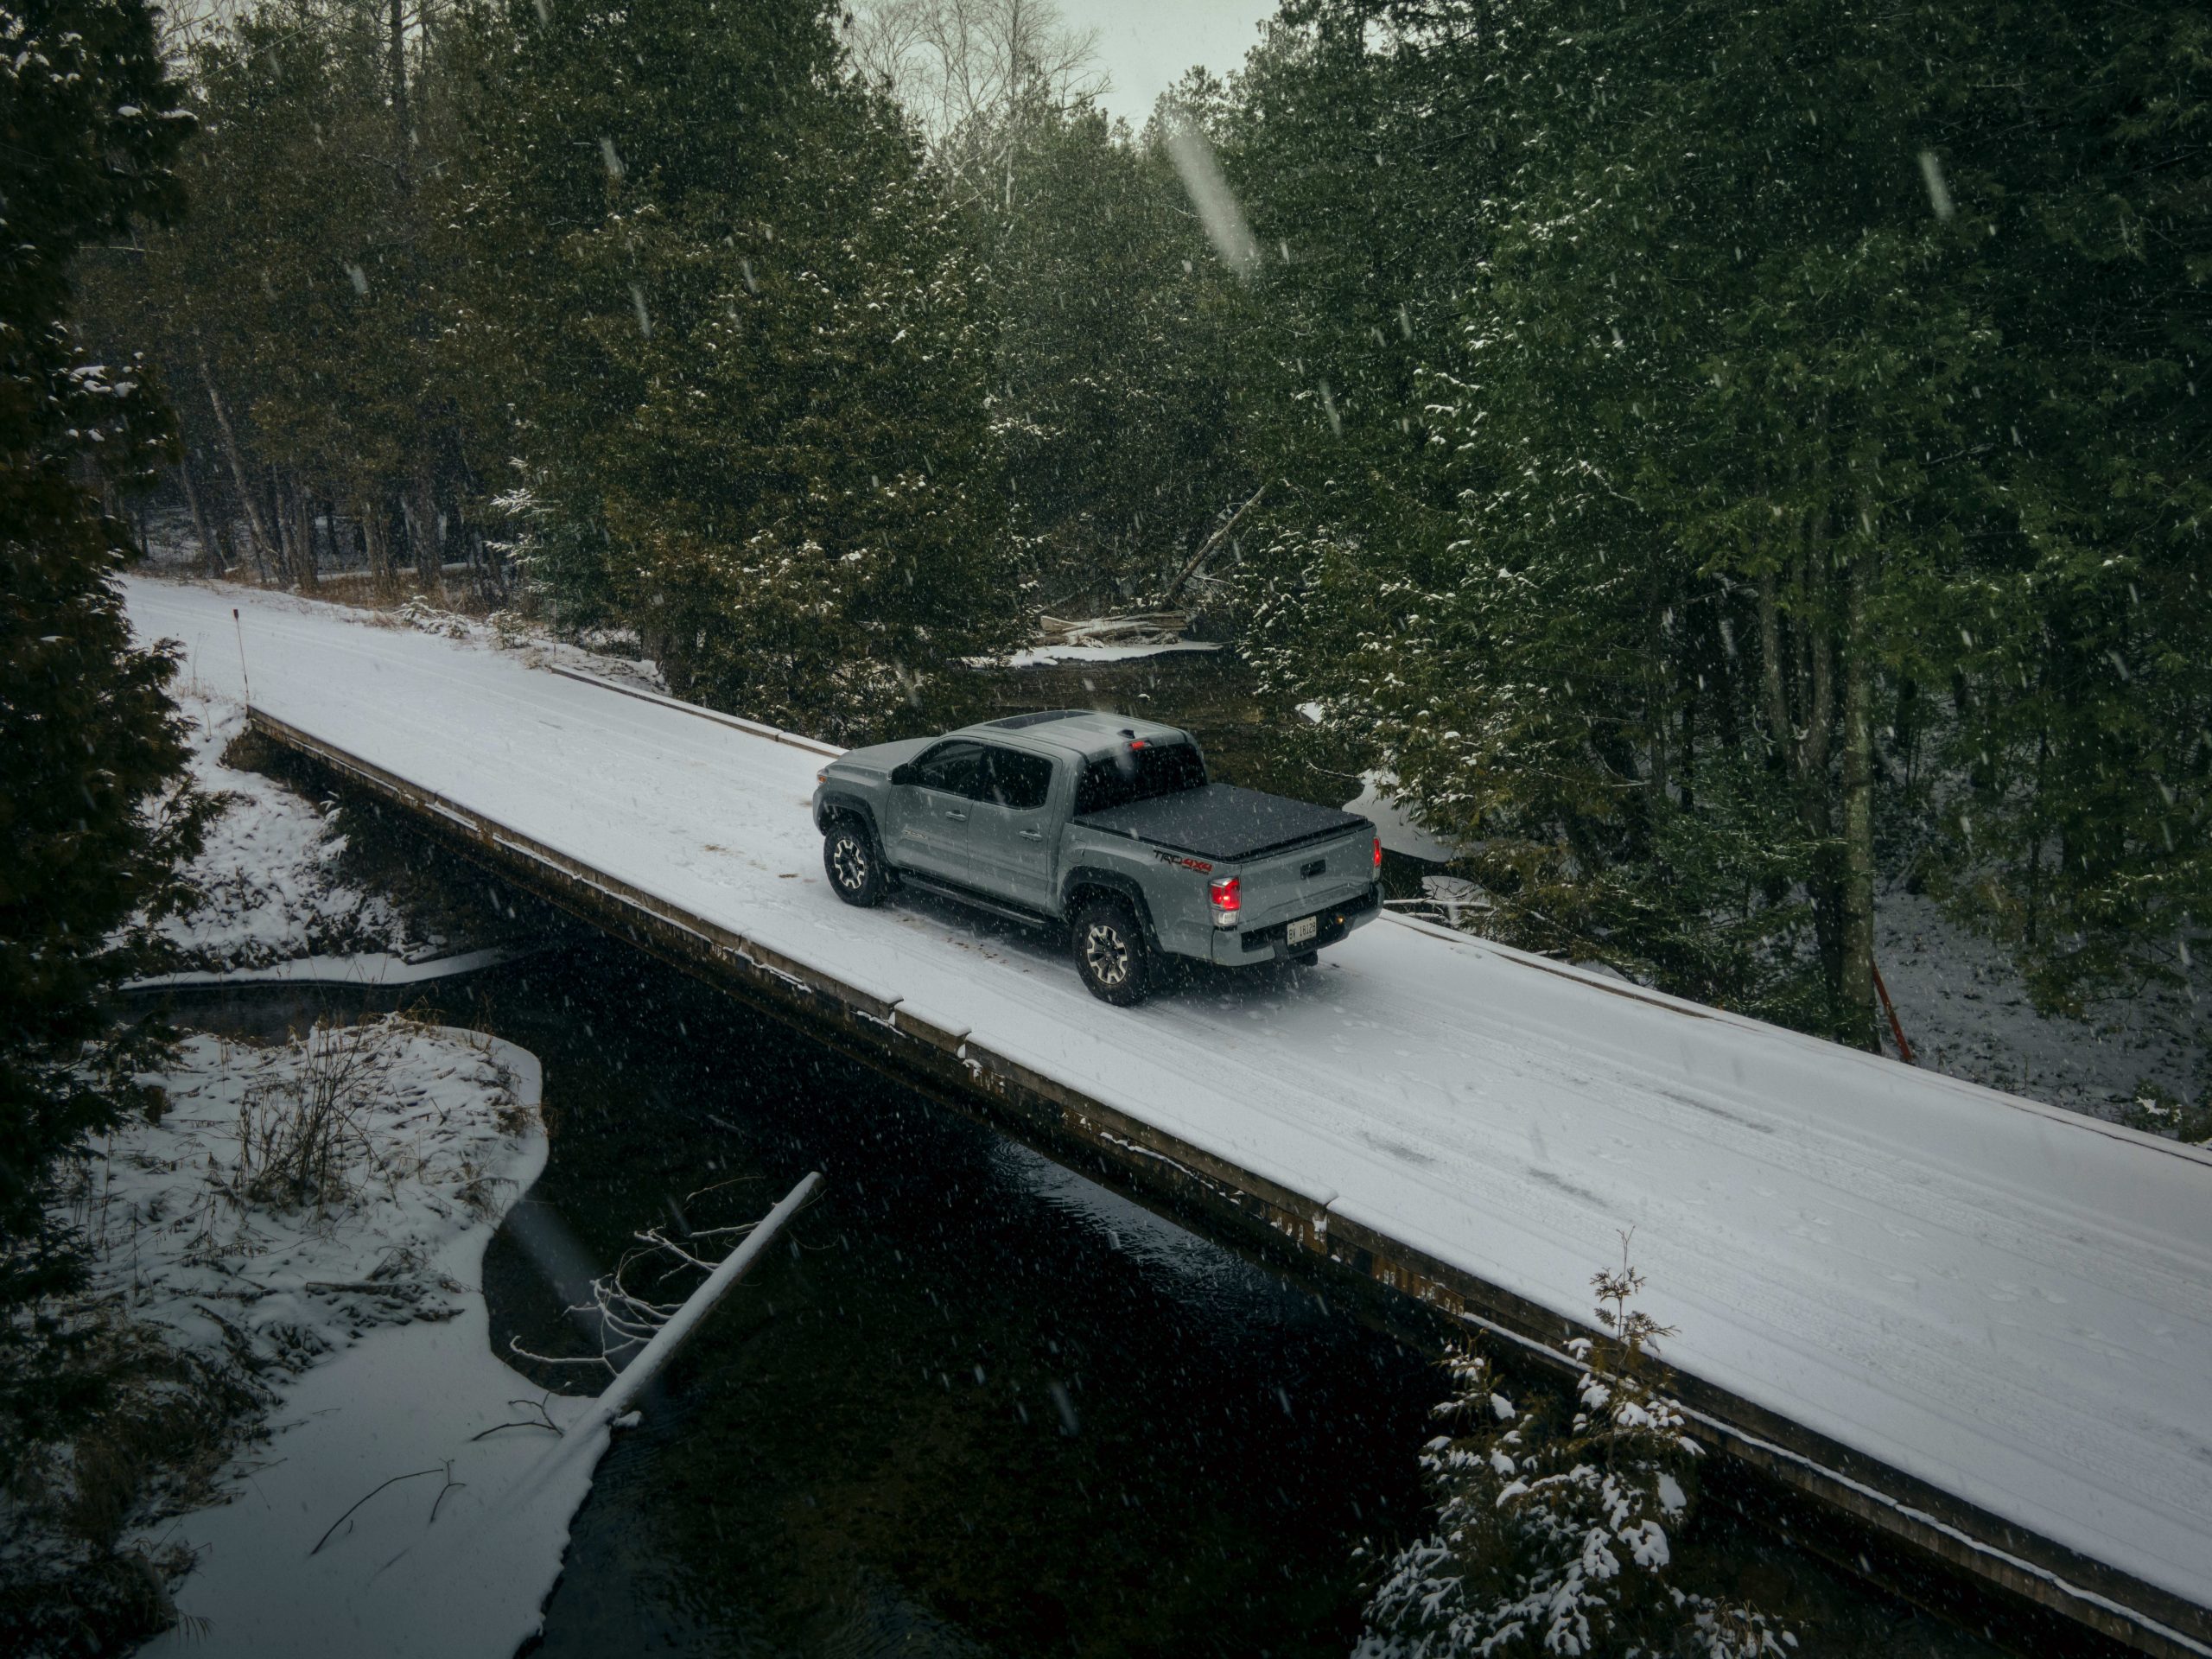 Tacoma TRD Off Road sur une route enneigée : préparer votre voiture pour l'hiver - Ste-Foy Toyota